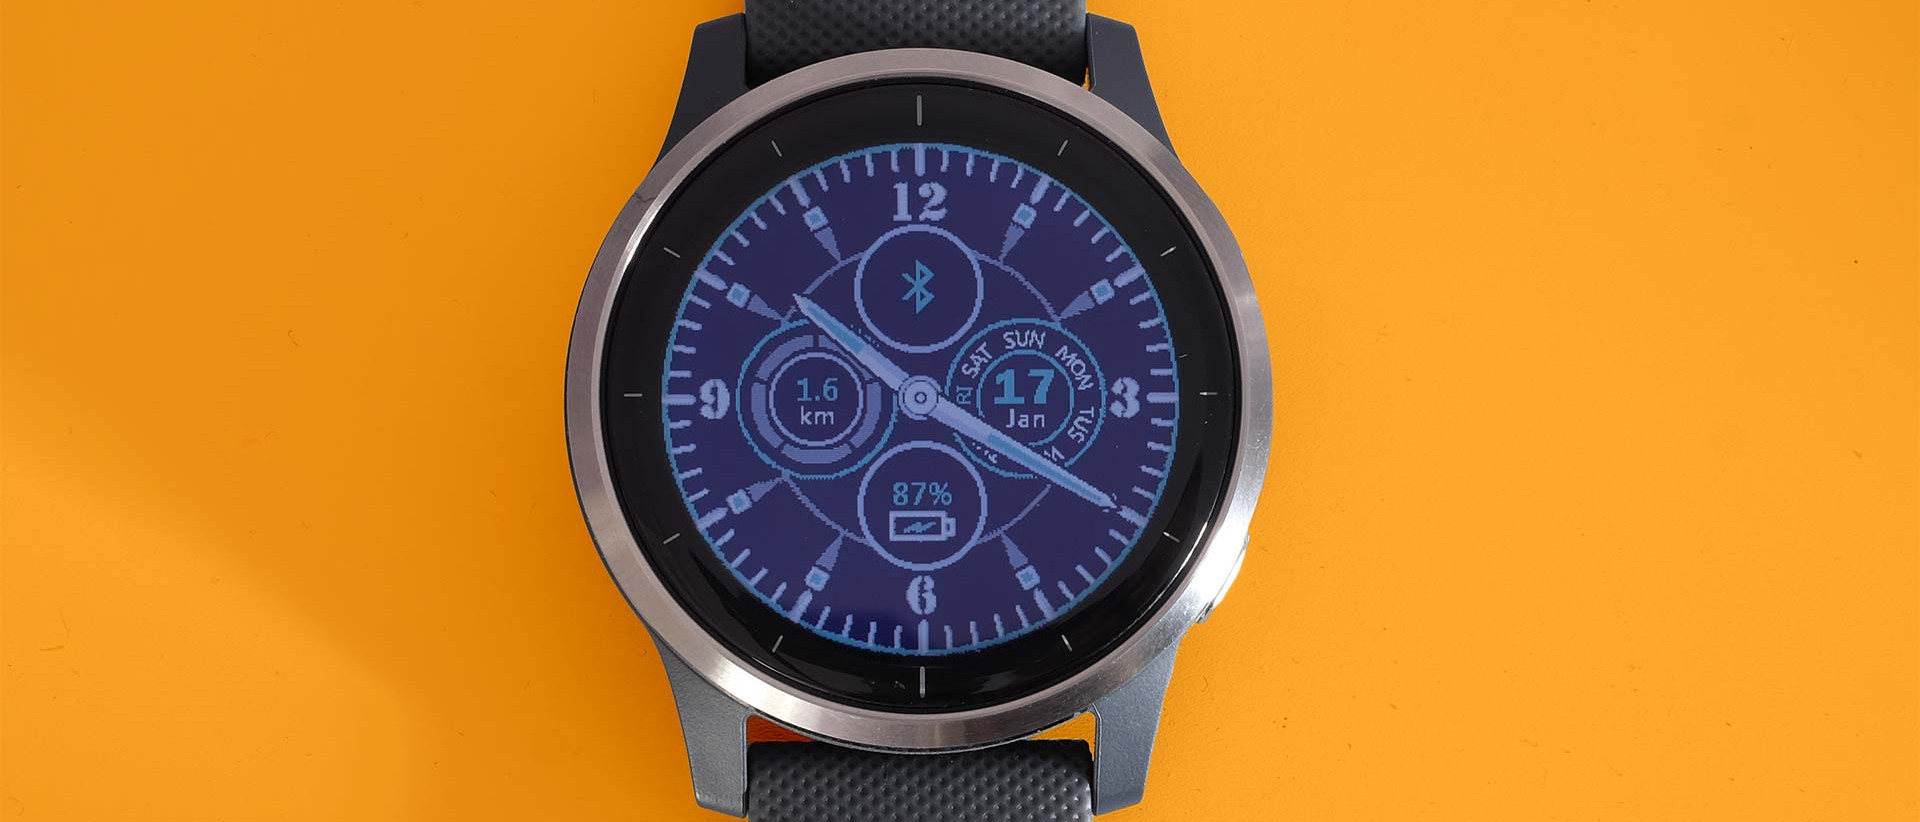 Garmin Vivoactive 4 Smartwatch In-Depth Review